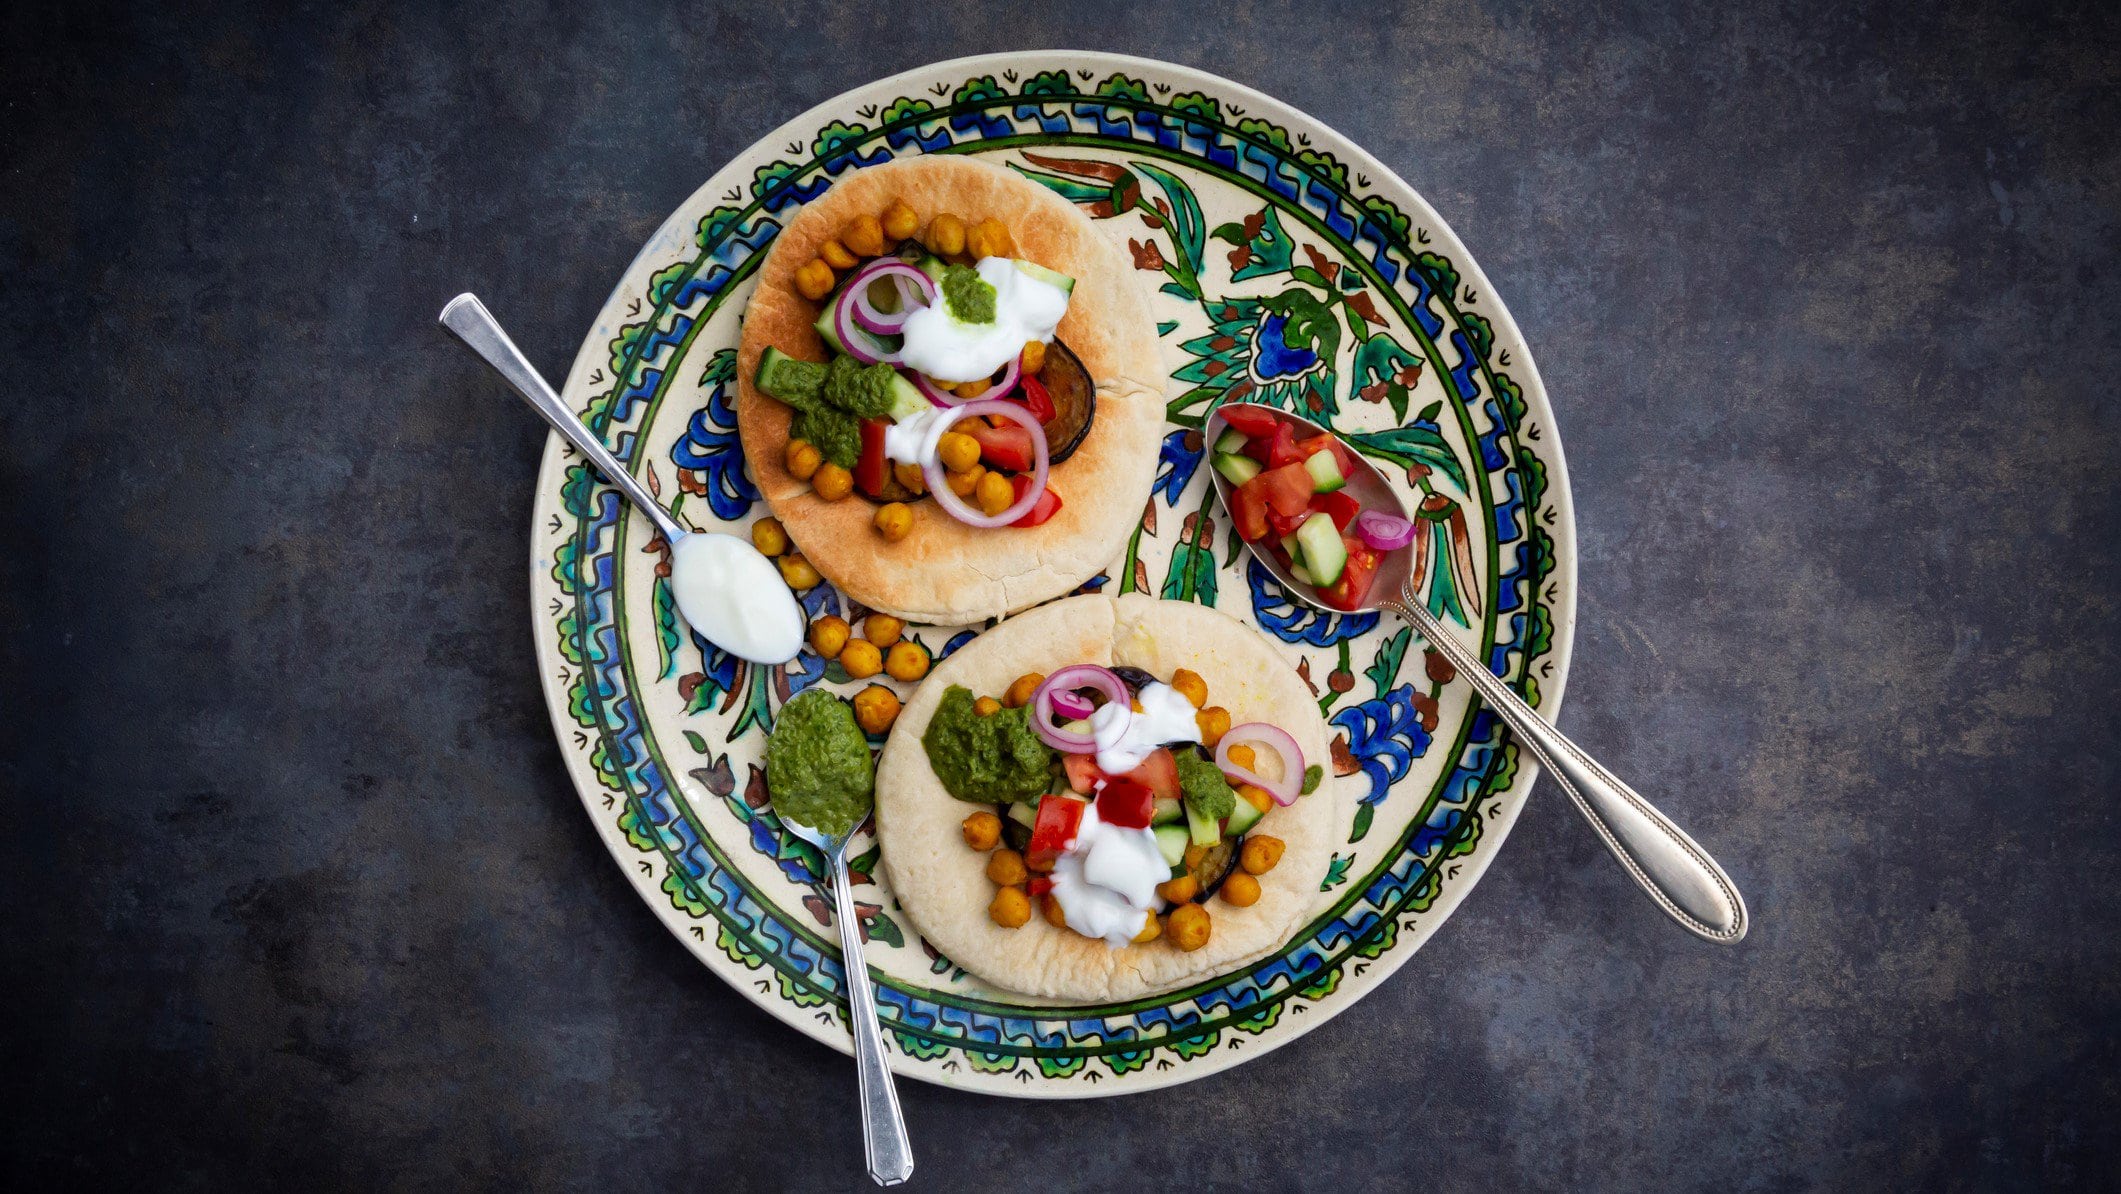 Ein arabisch bemalter Teller mit Sabich, Pitafladen belegt mit Gemüse und einer weißen sowie grünen Soße.